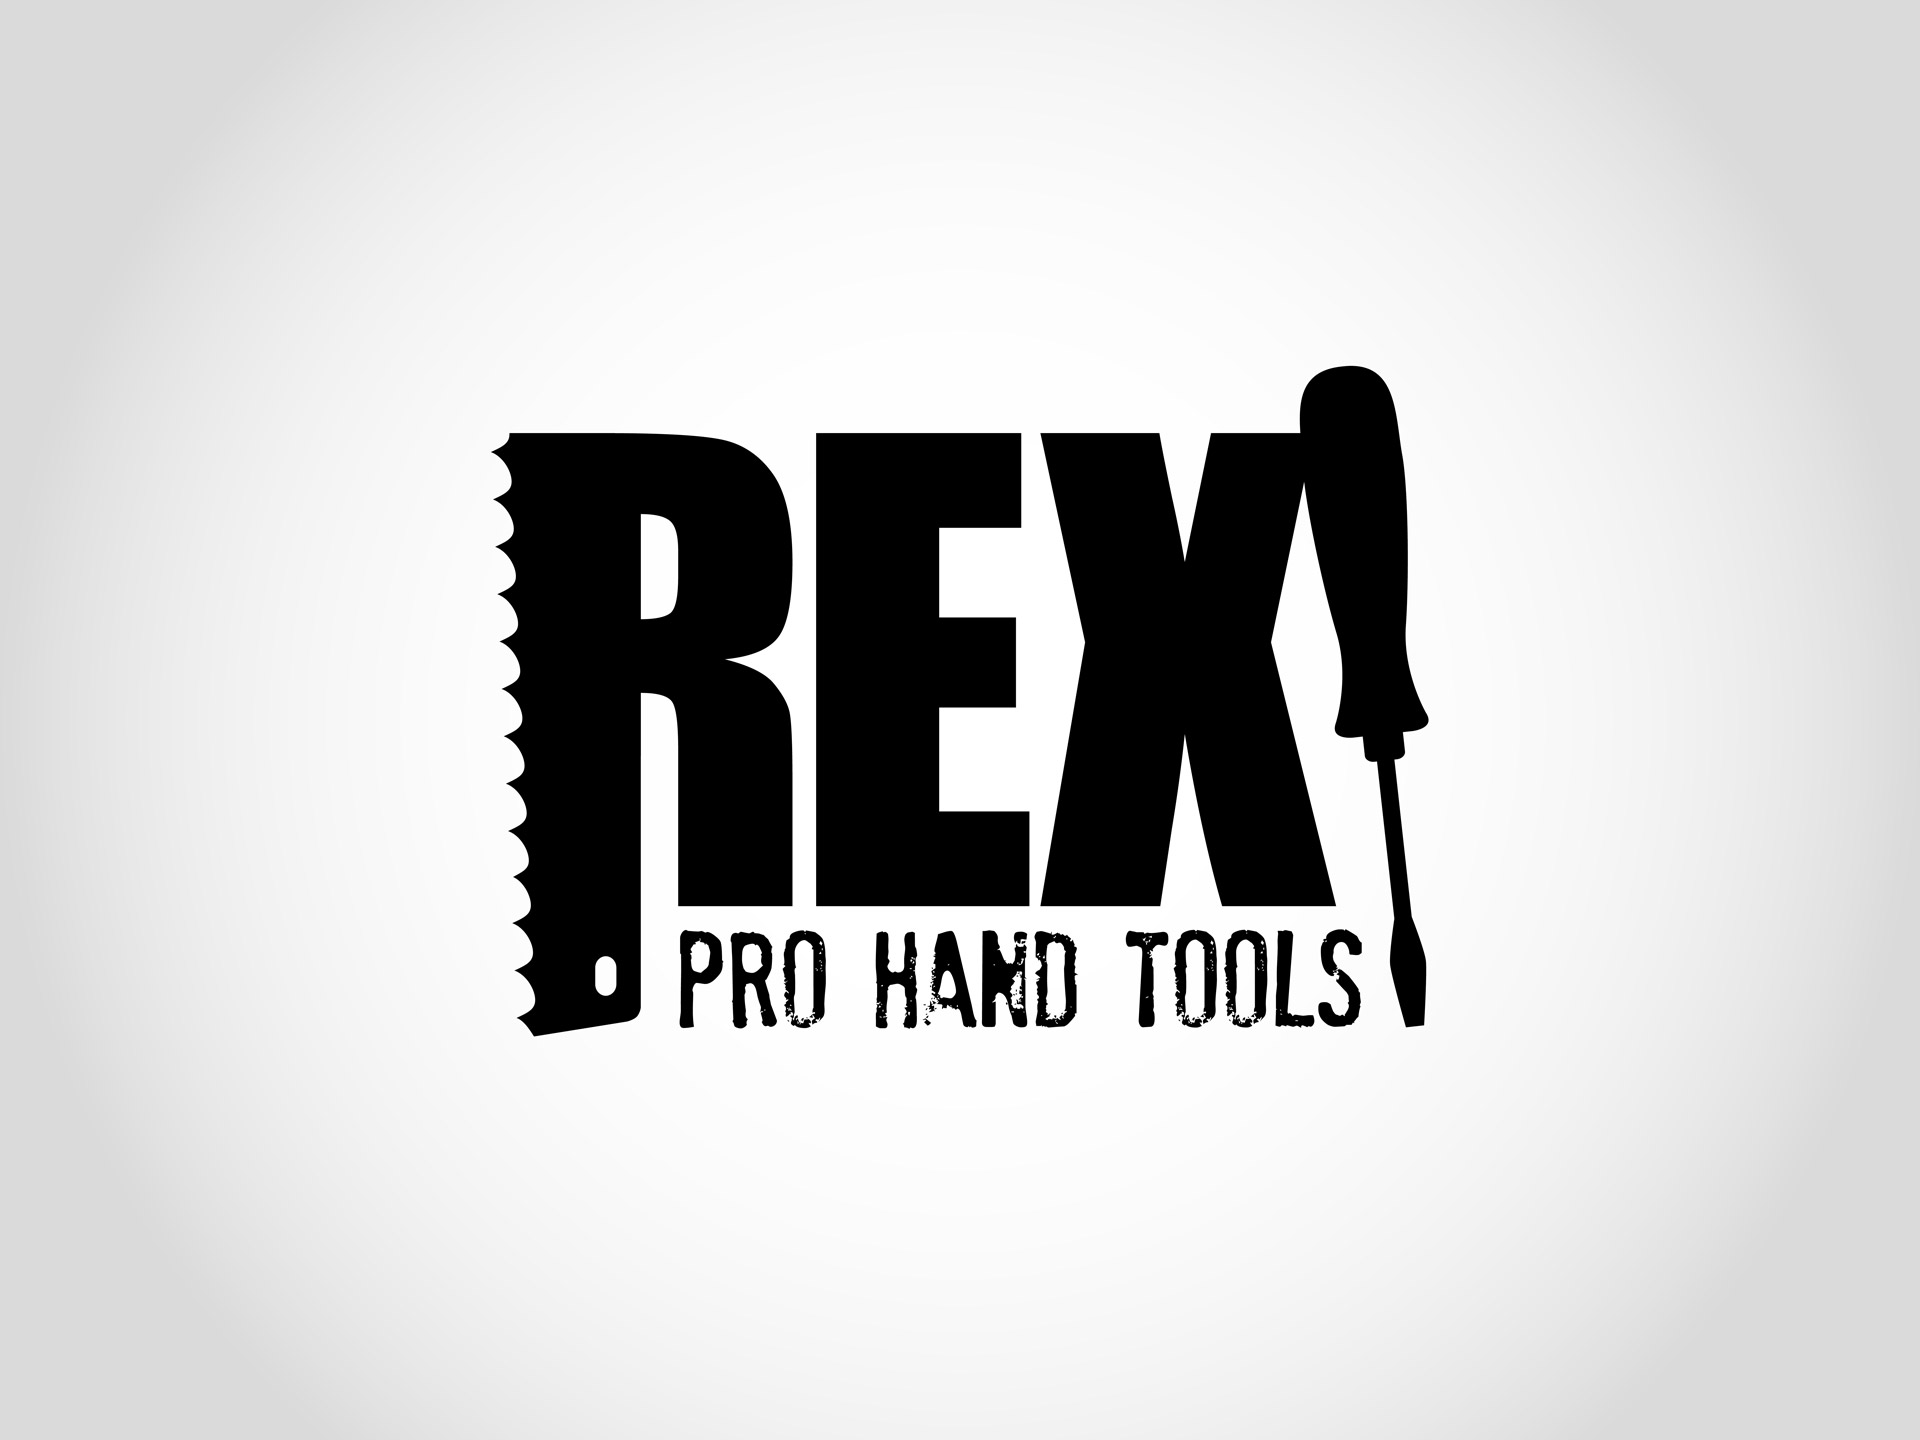 Rex Hand Tools branding